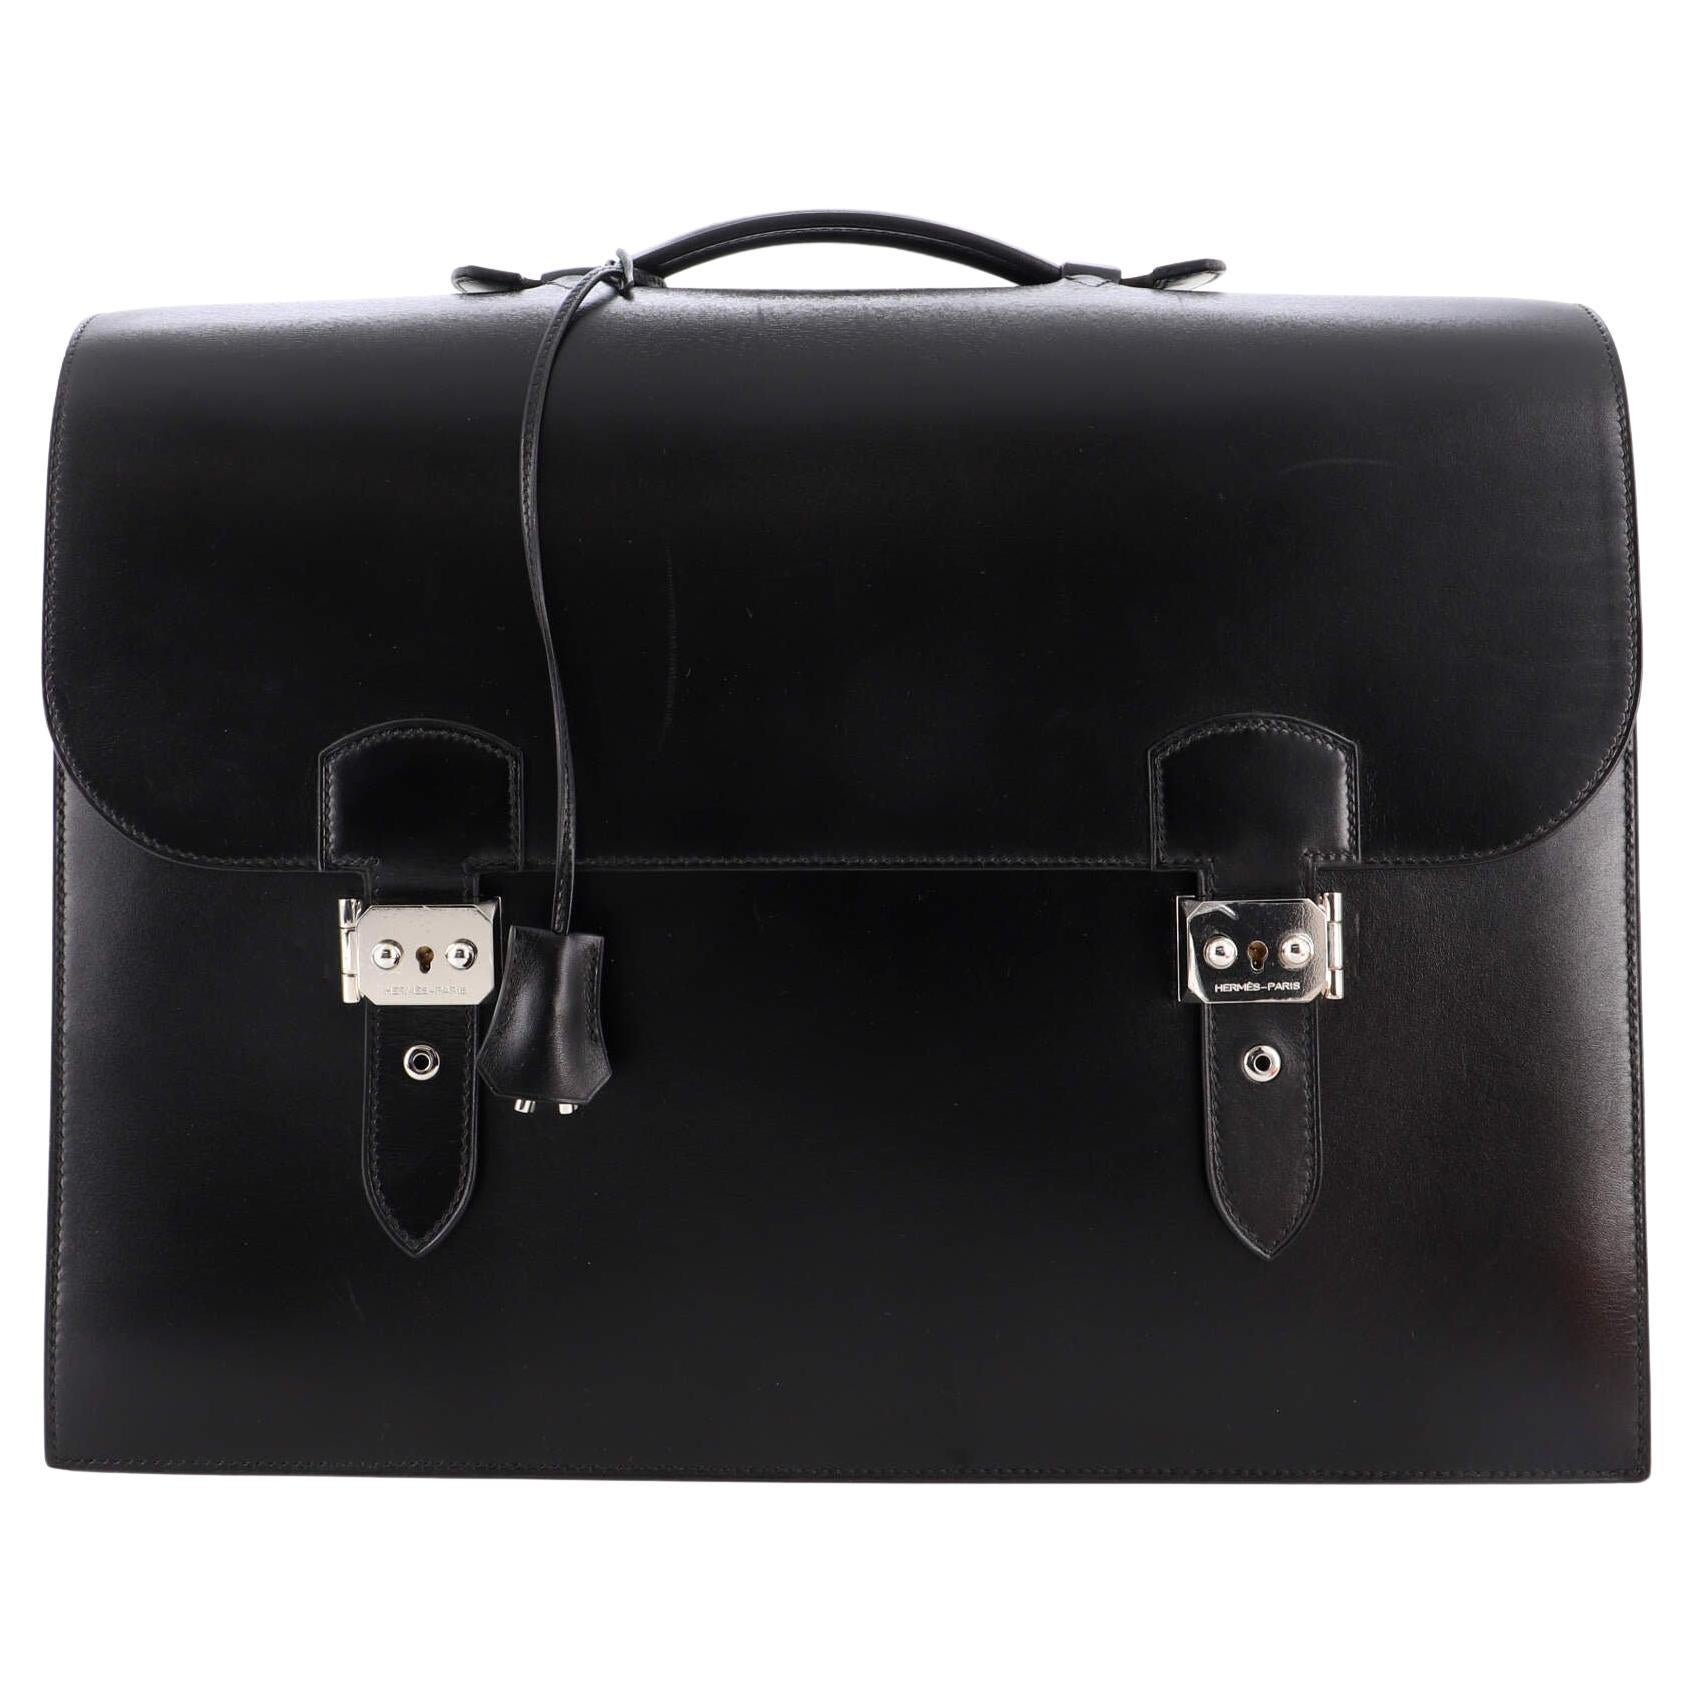 Hermes Bag Grace Kelly - 41 For Sale on 1stDibs